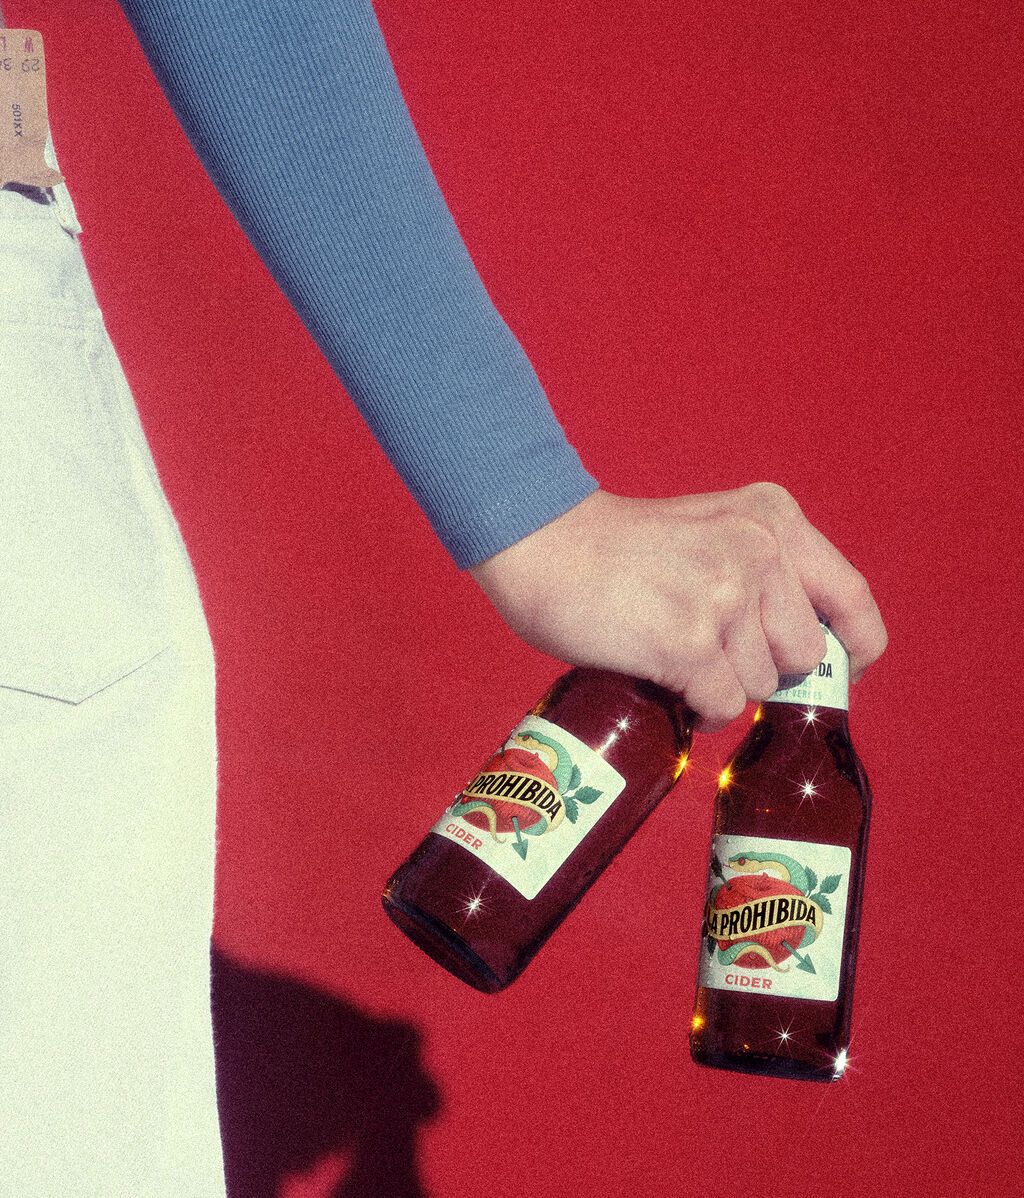 La Prohibida Cider